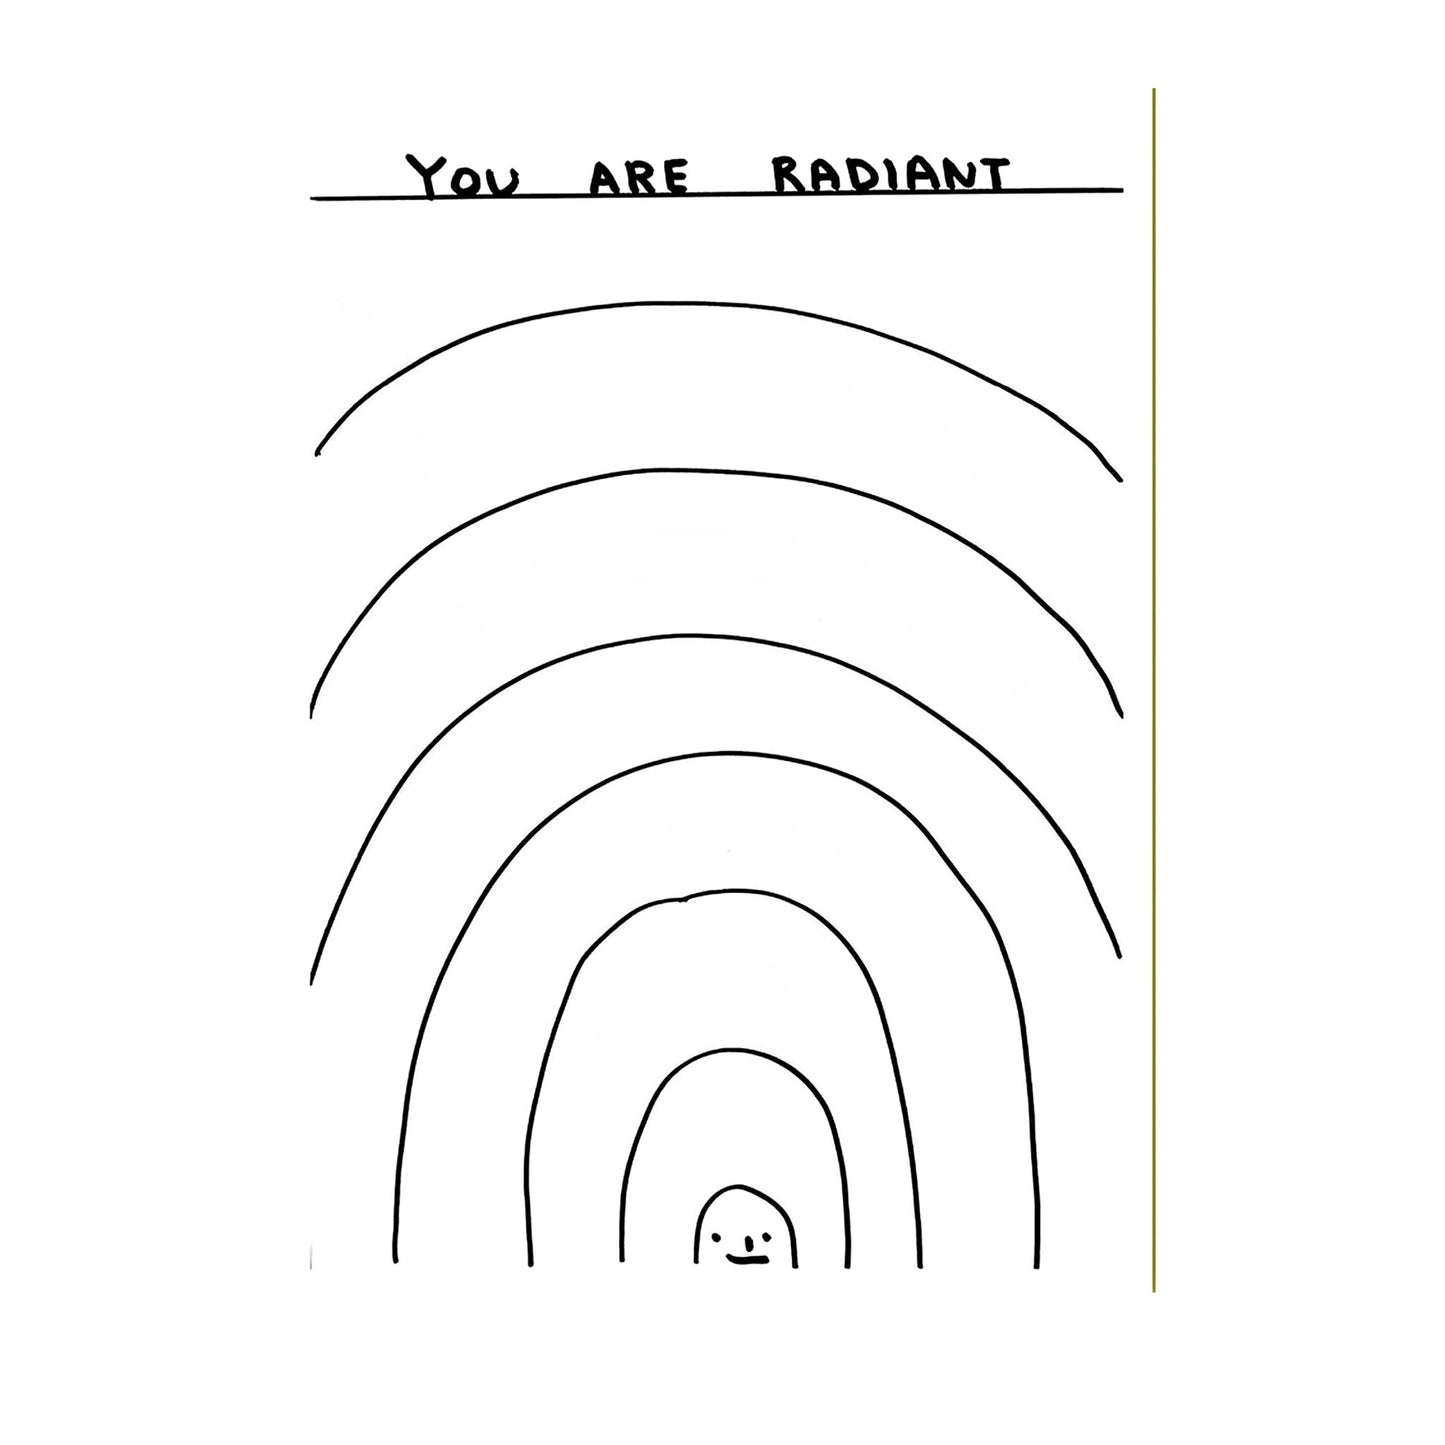 Grußkarte "You are radiant" - David Shrigley - Vandeley